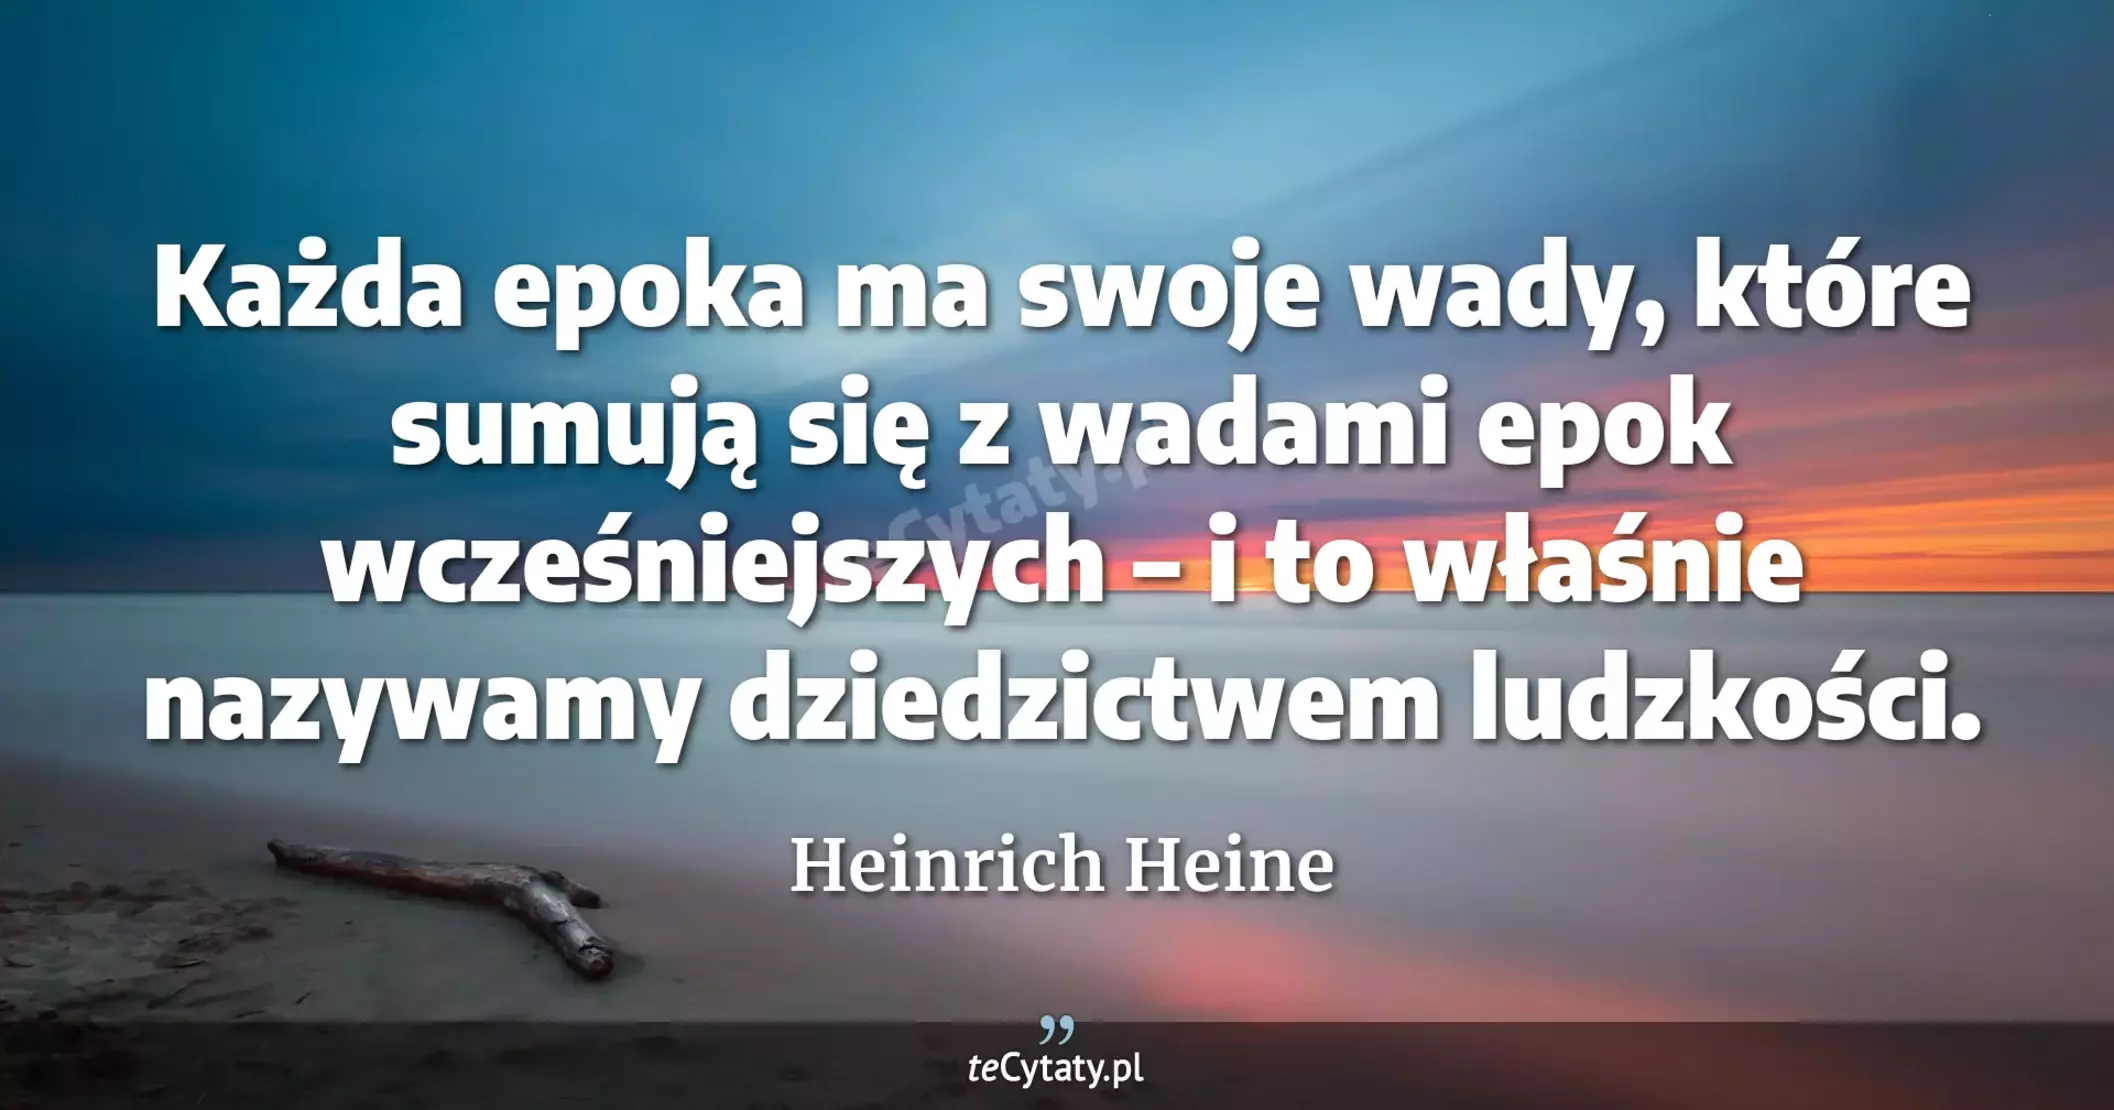 Każda epoka ma swoje wady, które sumują się z wadami epok wcześniejszych – i to właśnie nazywamy dziedzictwem ludzkości. - Heinrich Heine